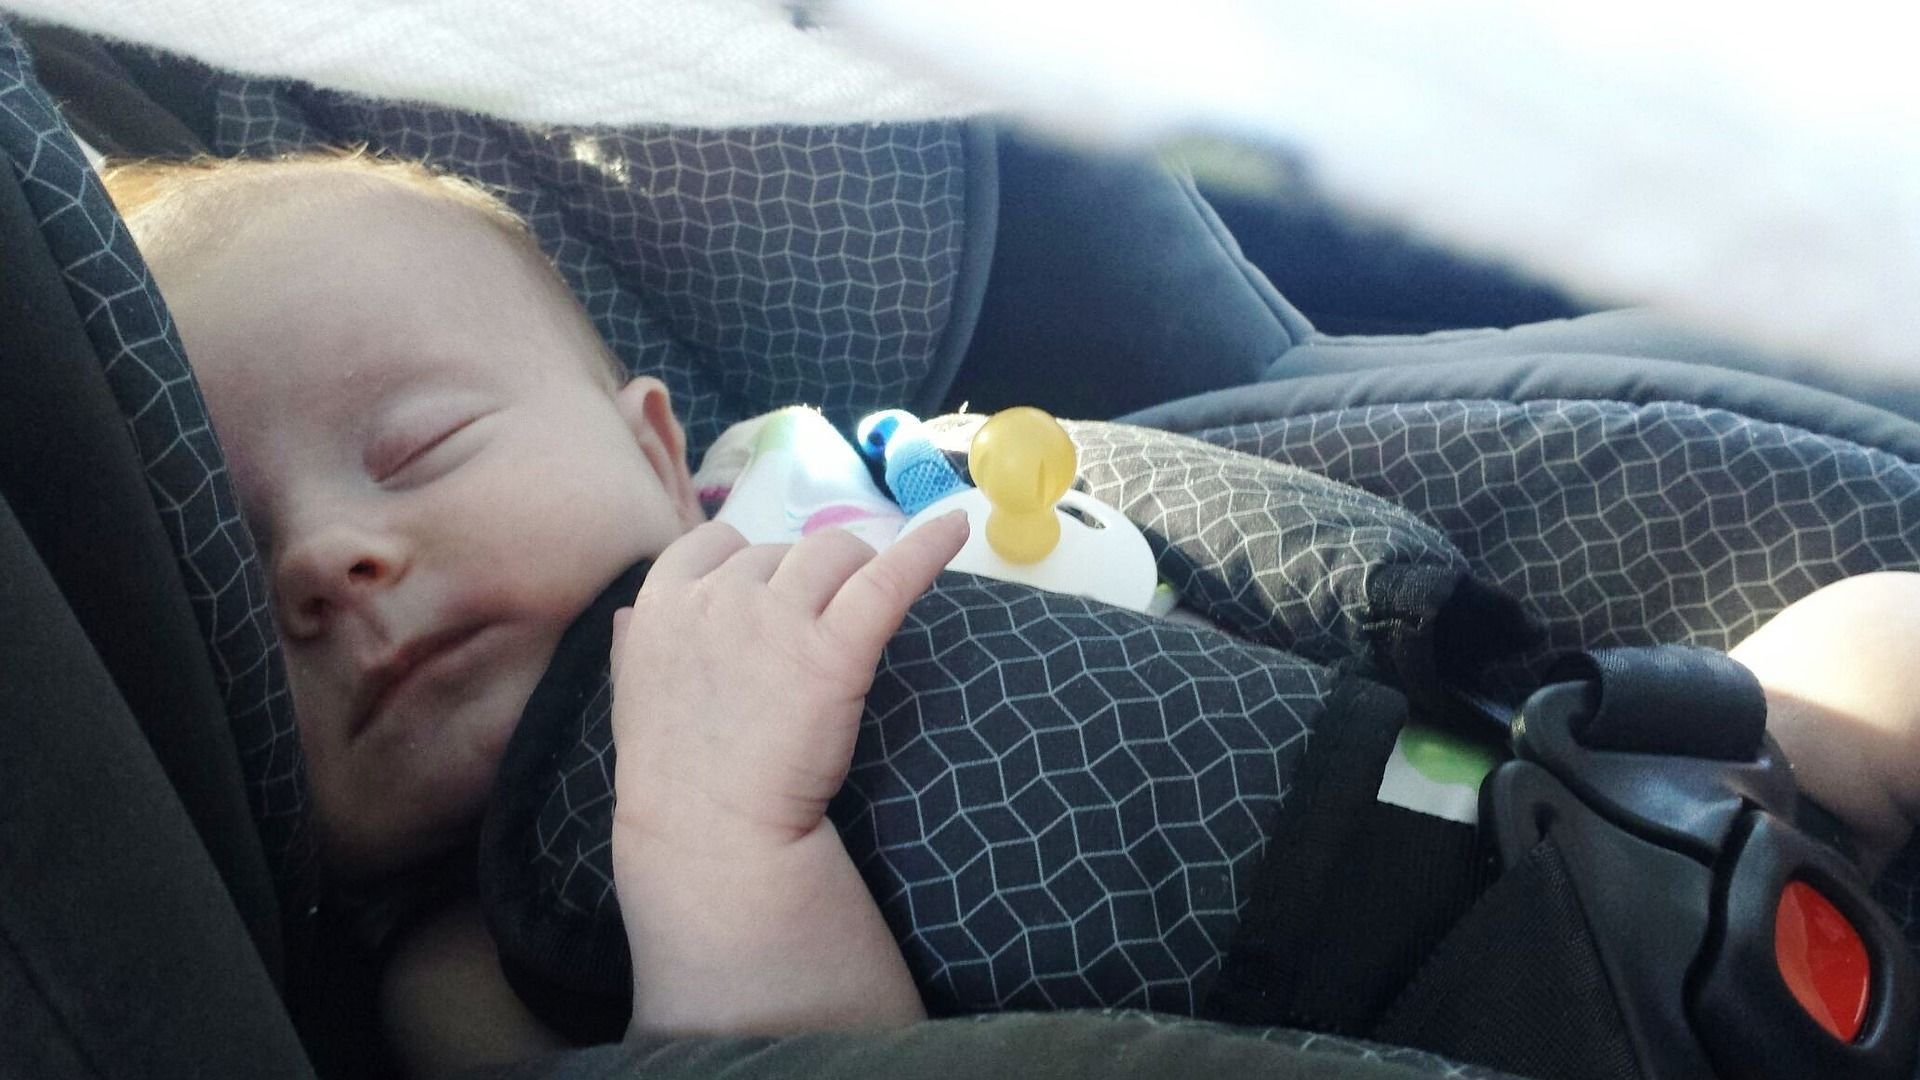 7. Meletakkan bayi car seat sejenak